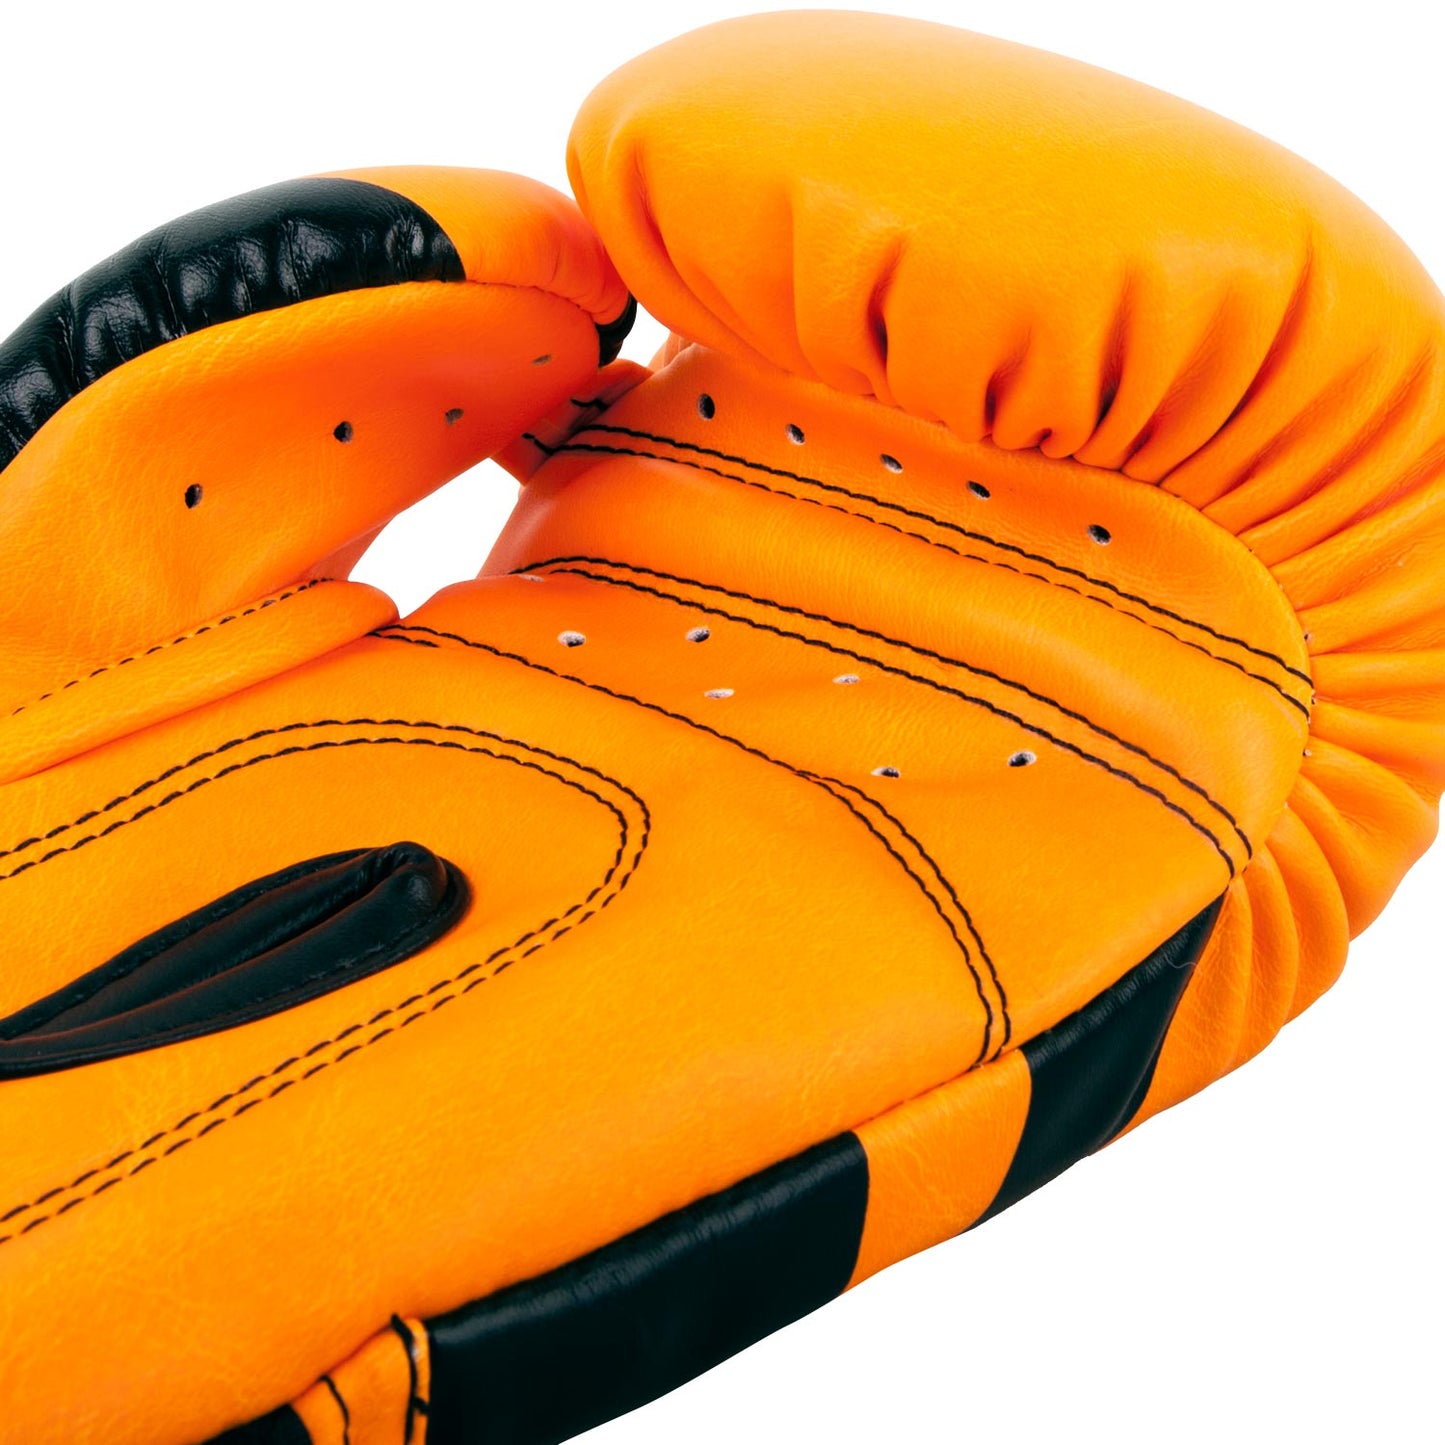 Venum Elite Boxing Gloves Kids - Exclusive - Fluo orange